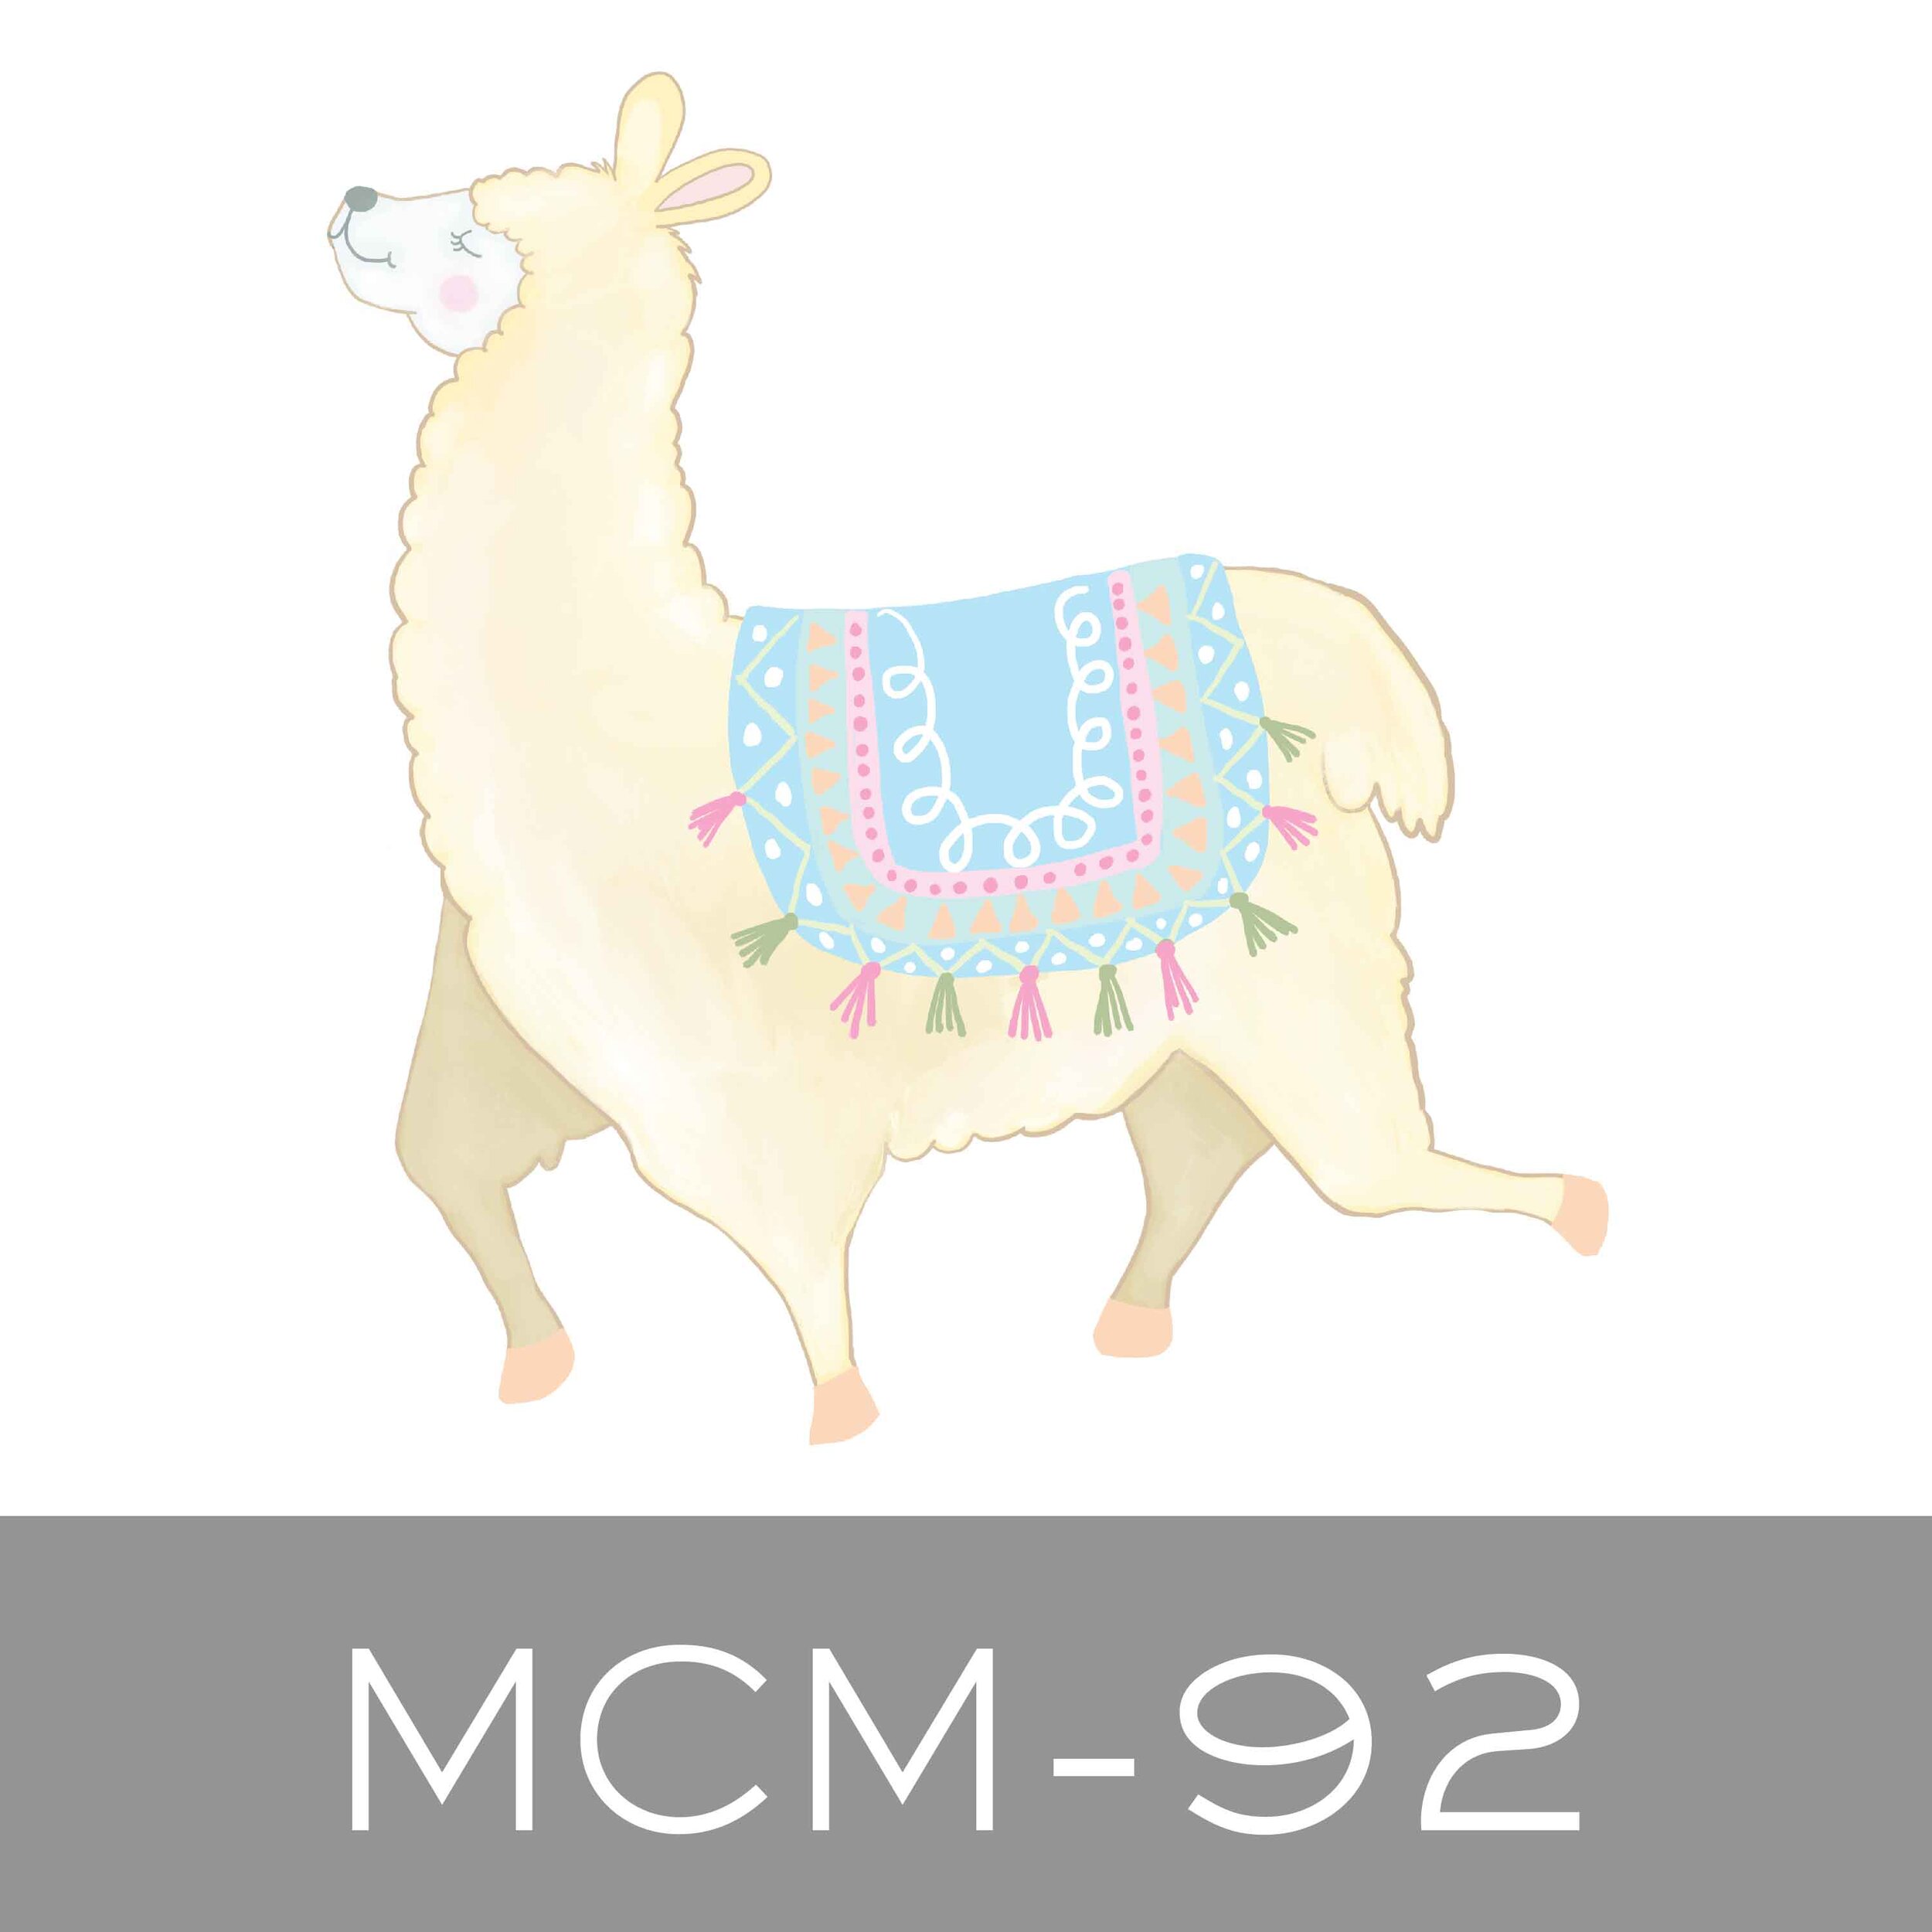 MCM-92.jpg